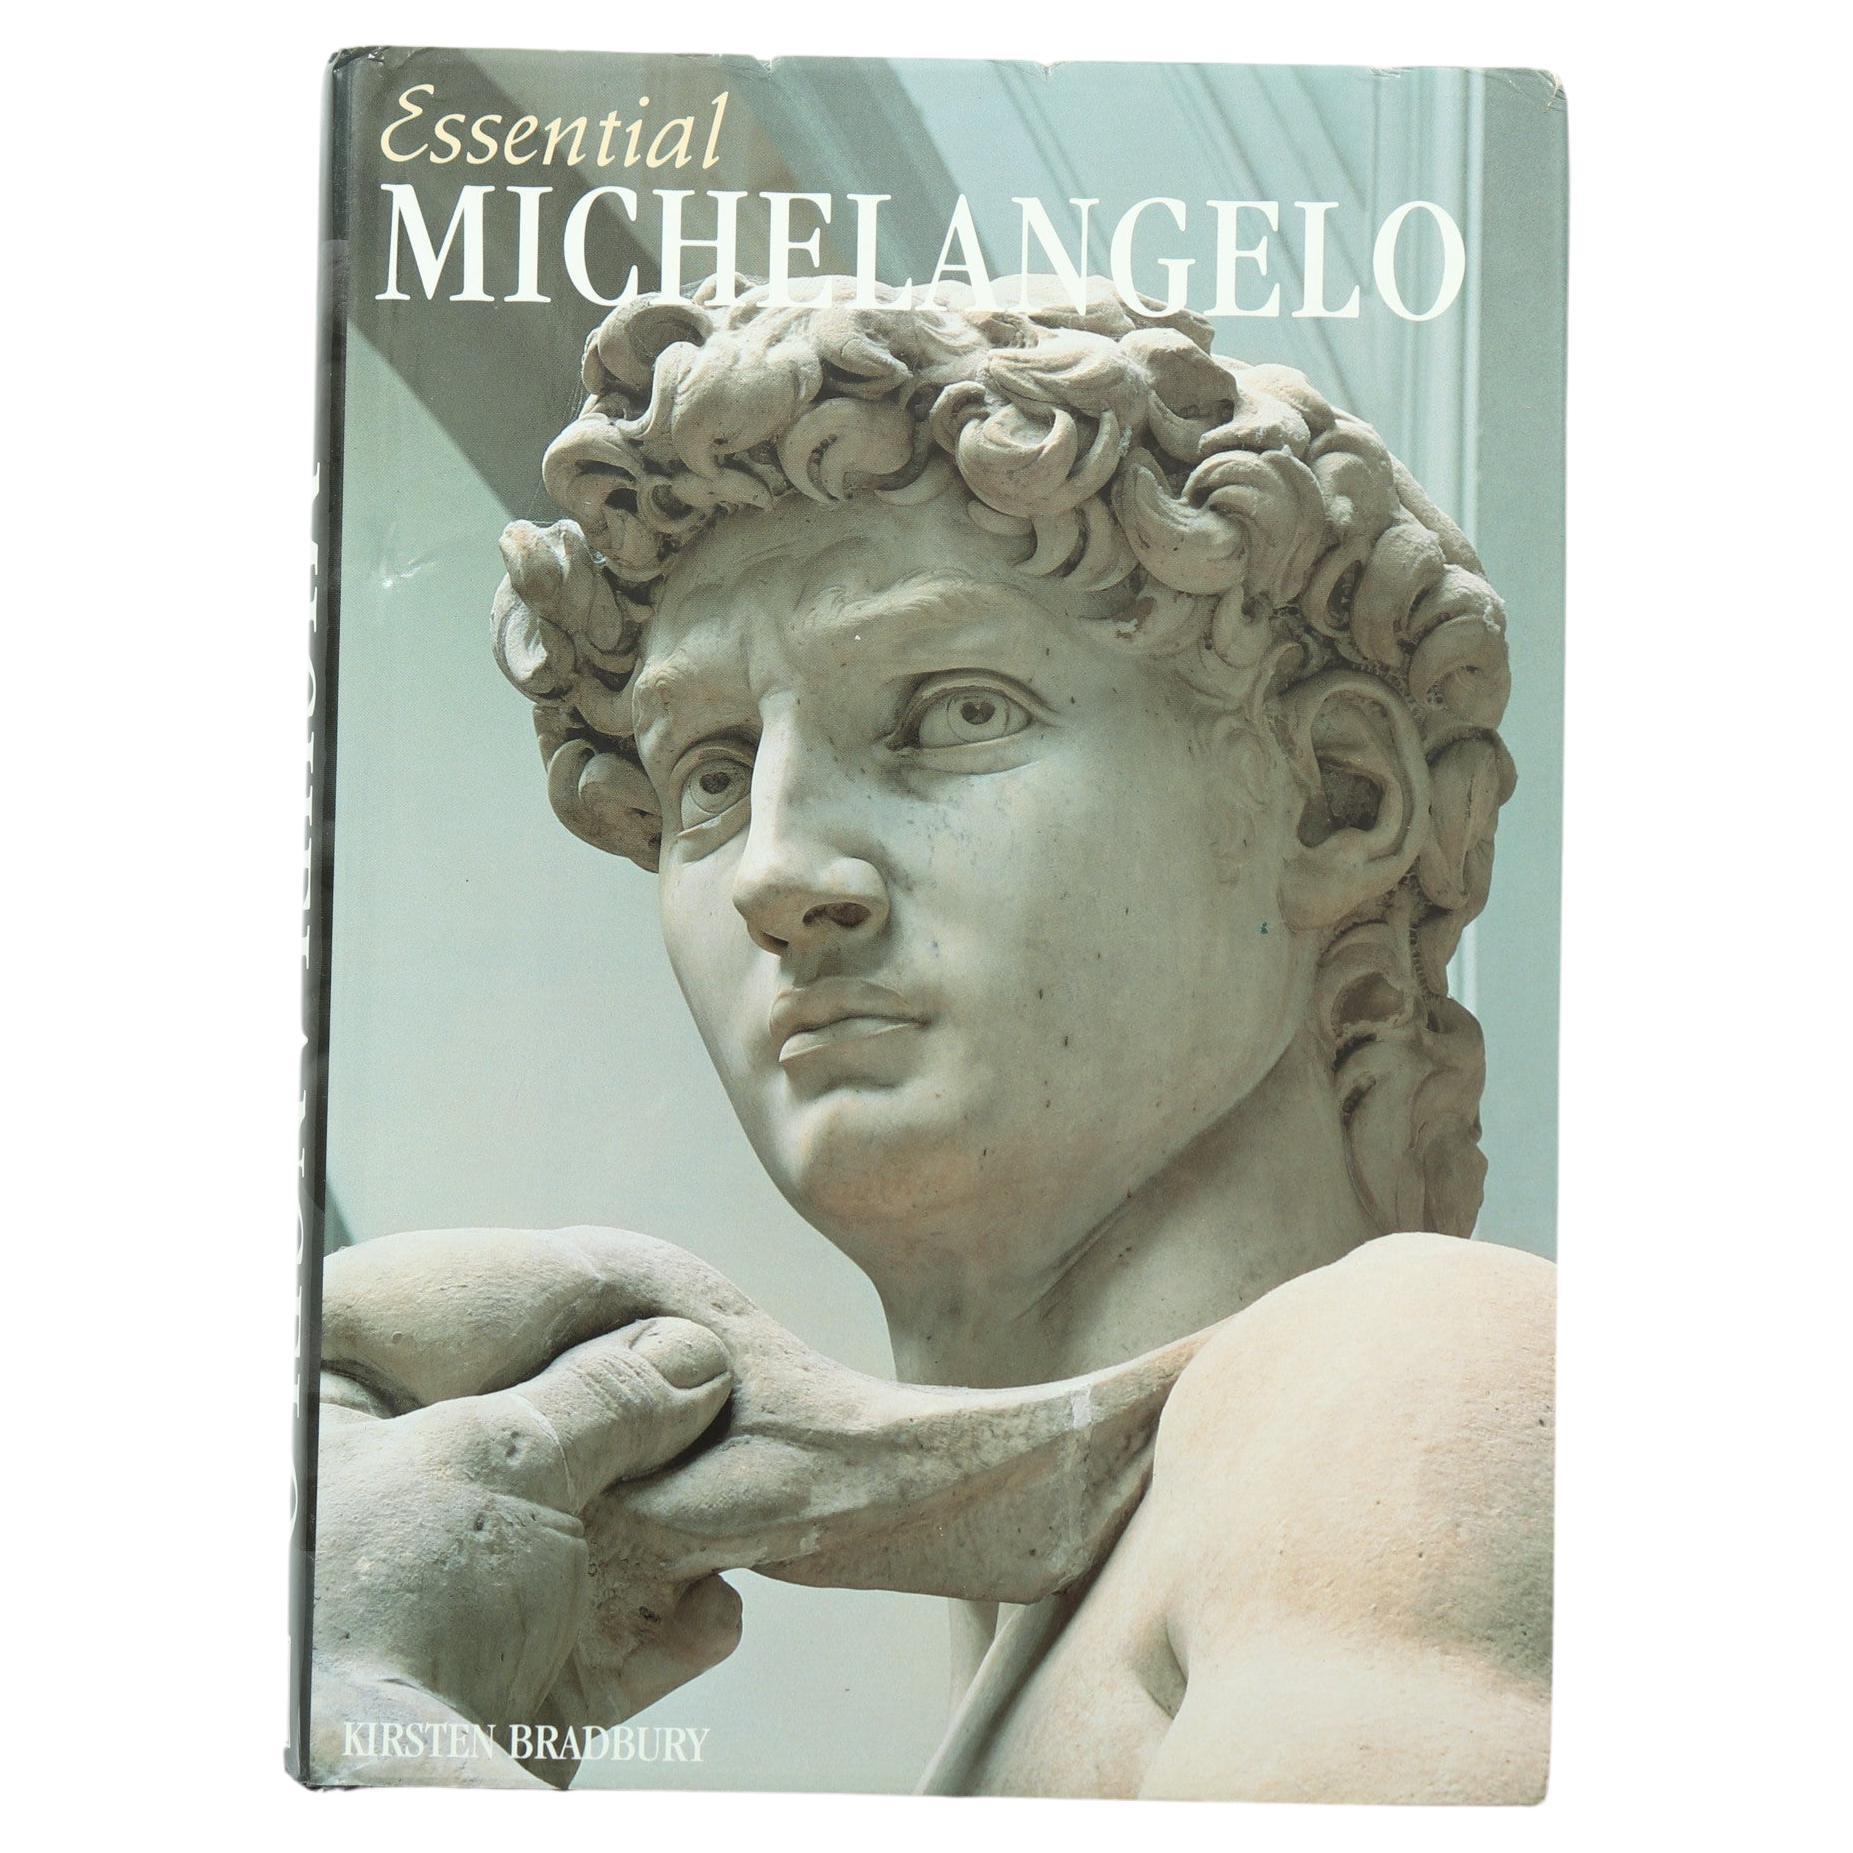 Essential Michelangelo by Kirsten Bradbury